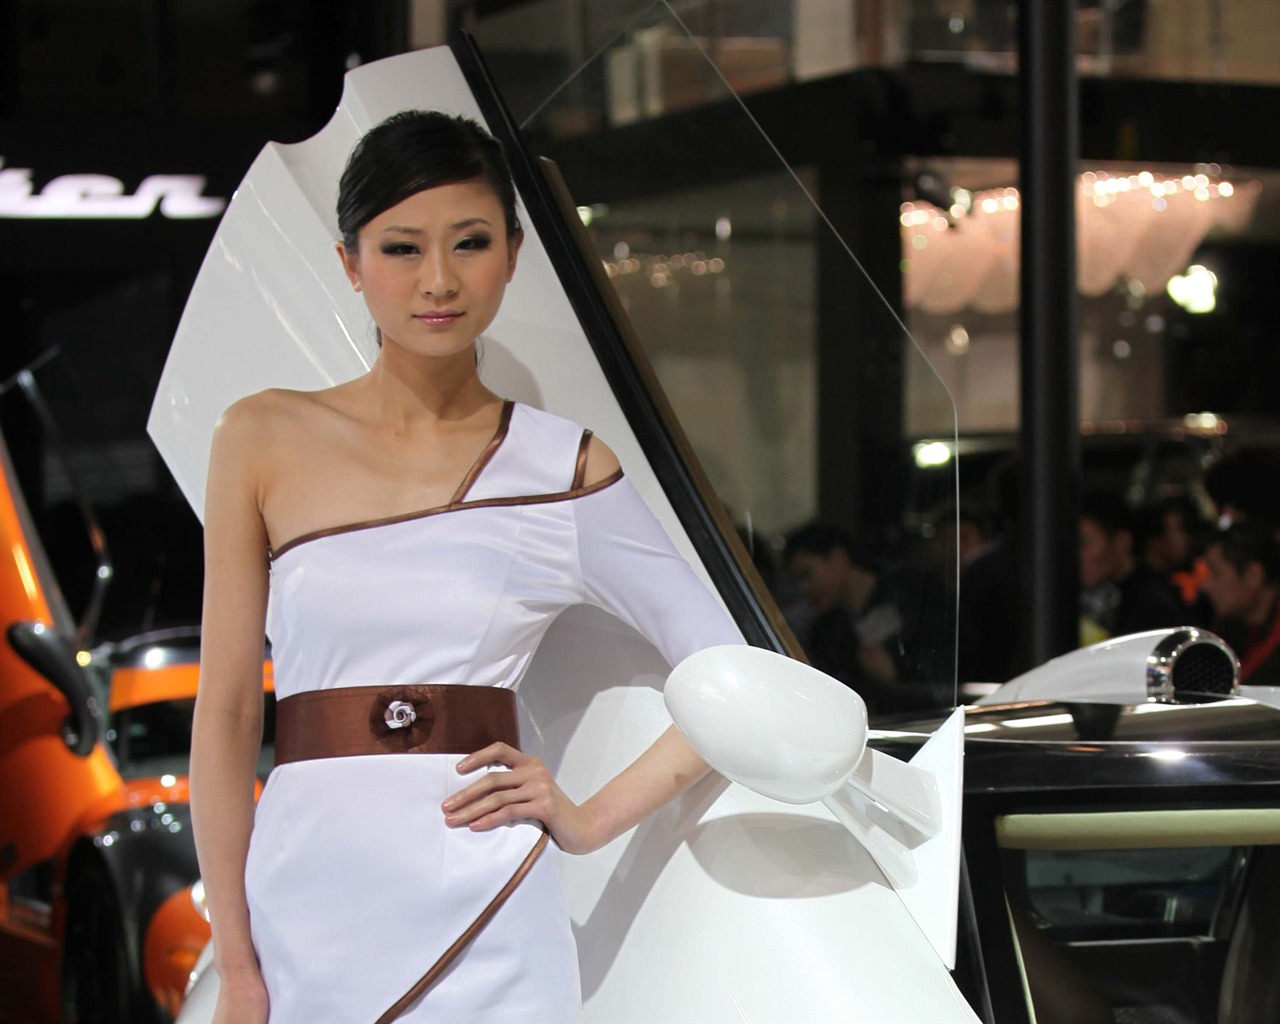 2010 v Pekingu Mezinárodním autosalonu krása (1) (vítr honí mraky práce) #24 - 1280x1024